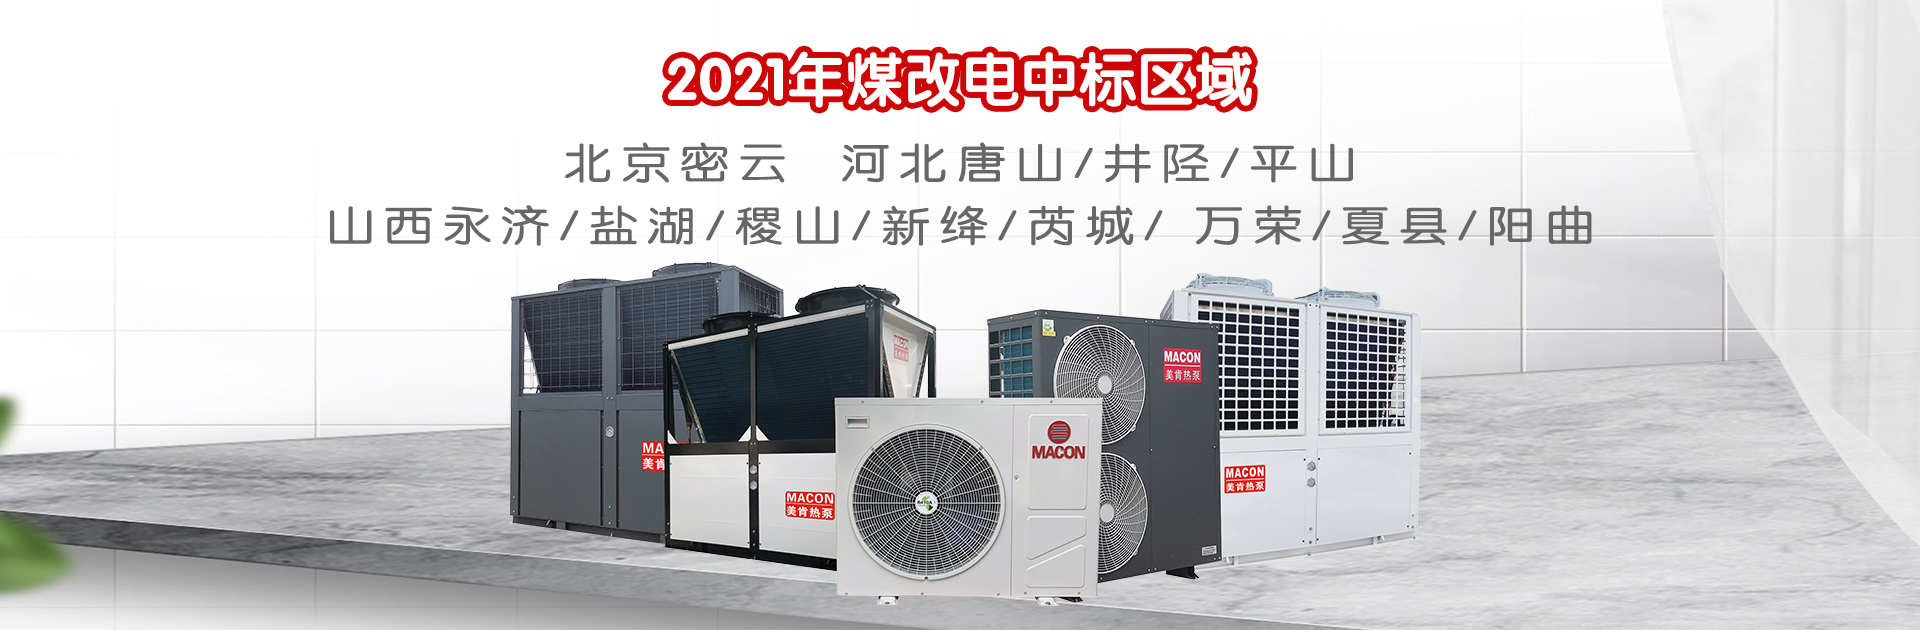 名企巡礼|美肯热泵重磅出击慧聪网2021中国暖通与舒适家居产业大会